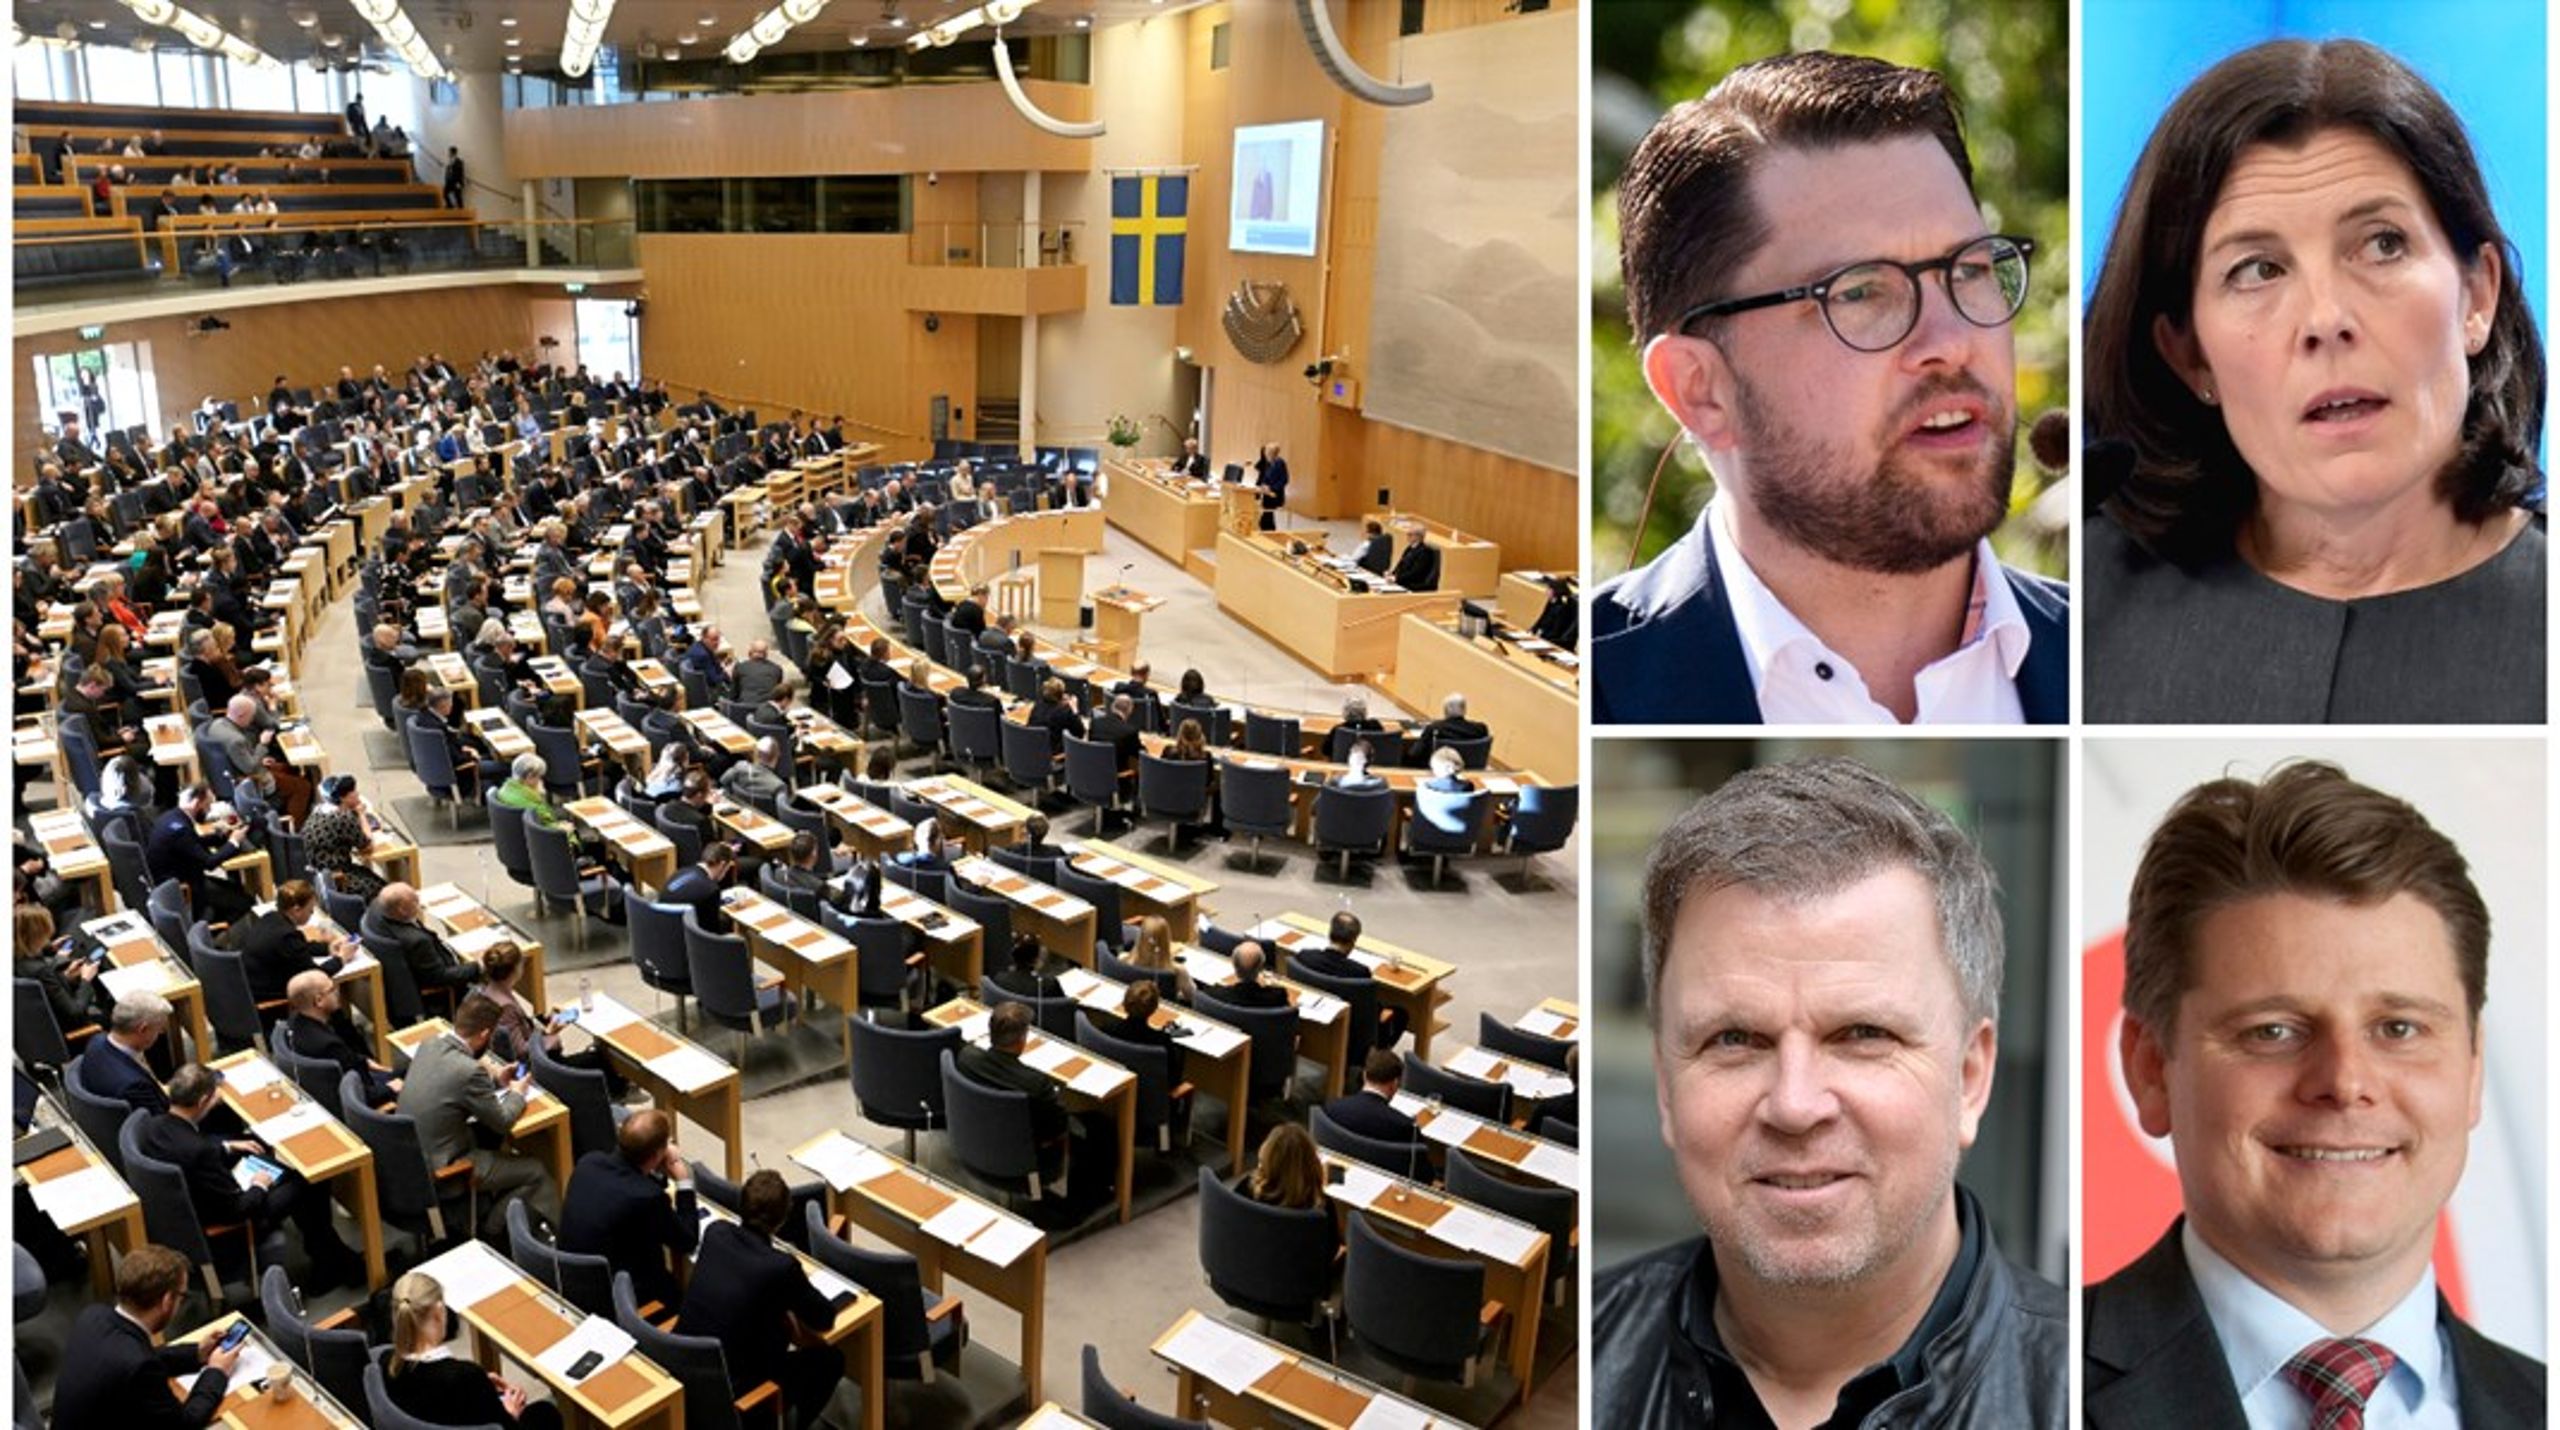 Jimmie Åkesson (SD), Karin Enström (M), Richard Herrey (M) och Niklas Karlsson (S) sitter förutom i riksdagen också i kommunfullmäktige runtom i landet, precis som över 100 av deras riksdagskollegor.&nbsp;